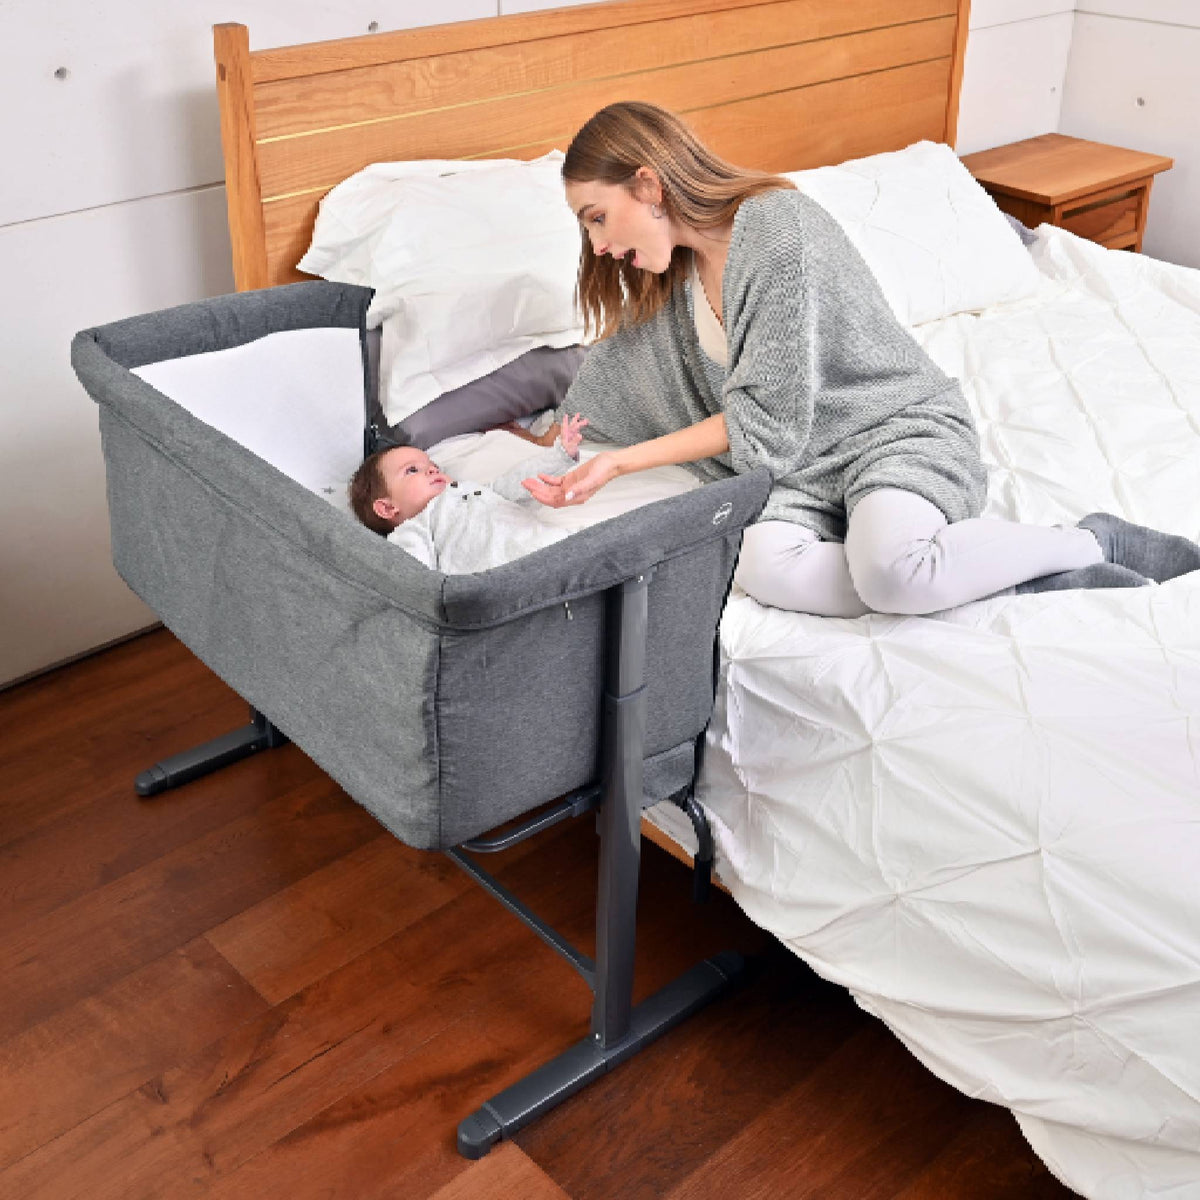 Una habitación con cuna colecho para un bebé recién nacido - El